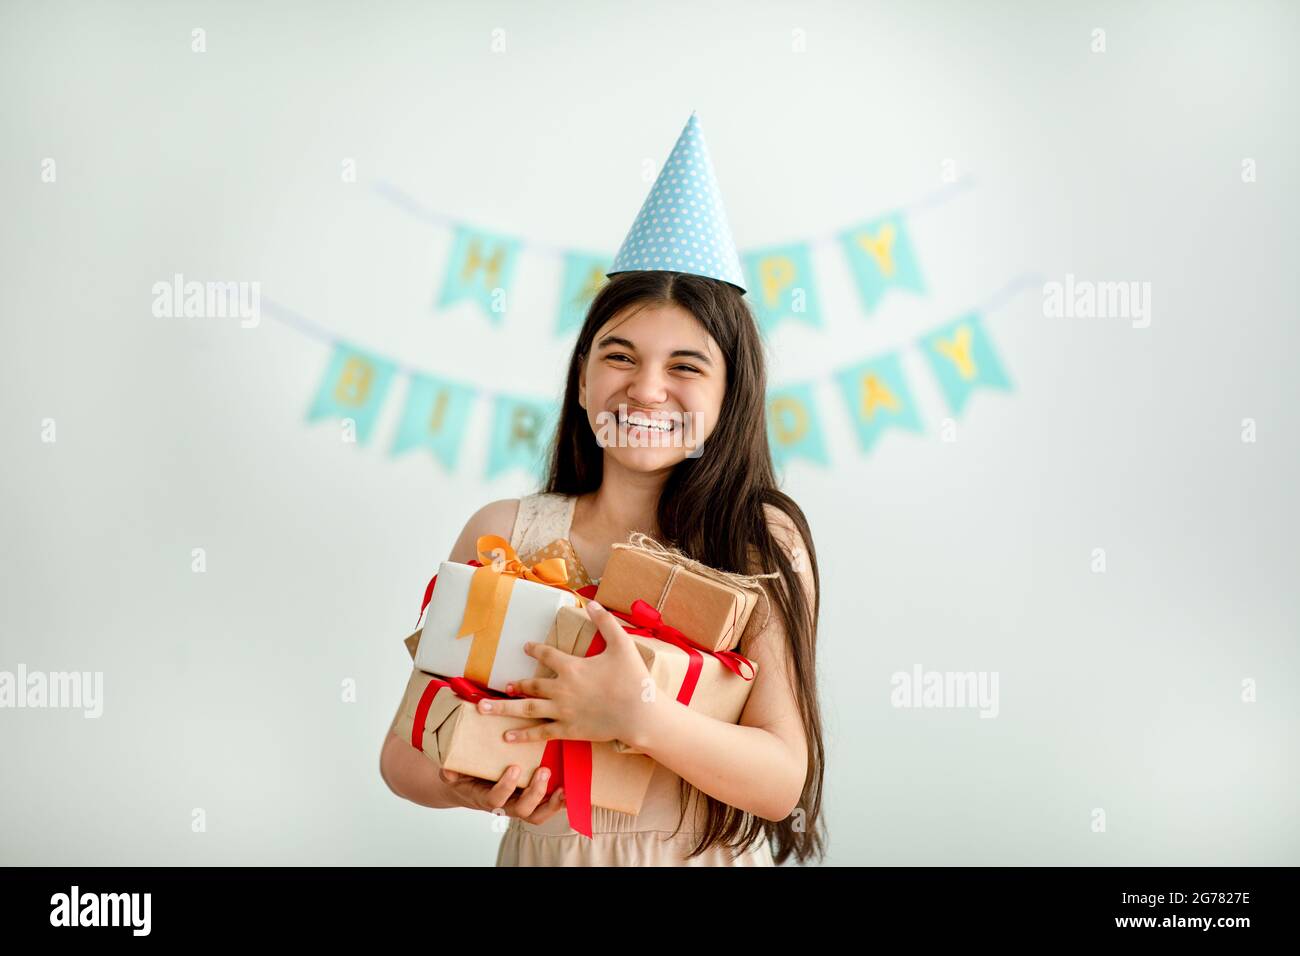 Une jeune fille indienne surjoyée dans un chapeau d'anniversaire tenant un tas de boîtes-cadeaux à l'intérieur Banque D'Images